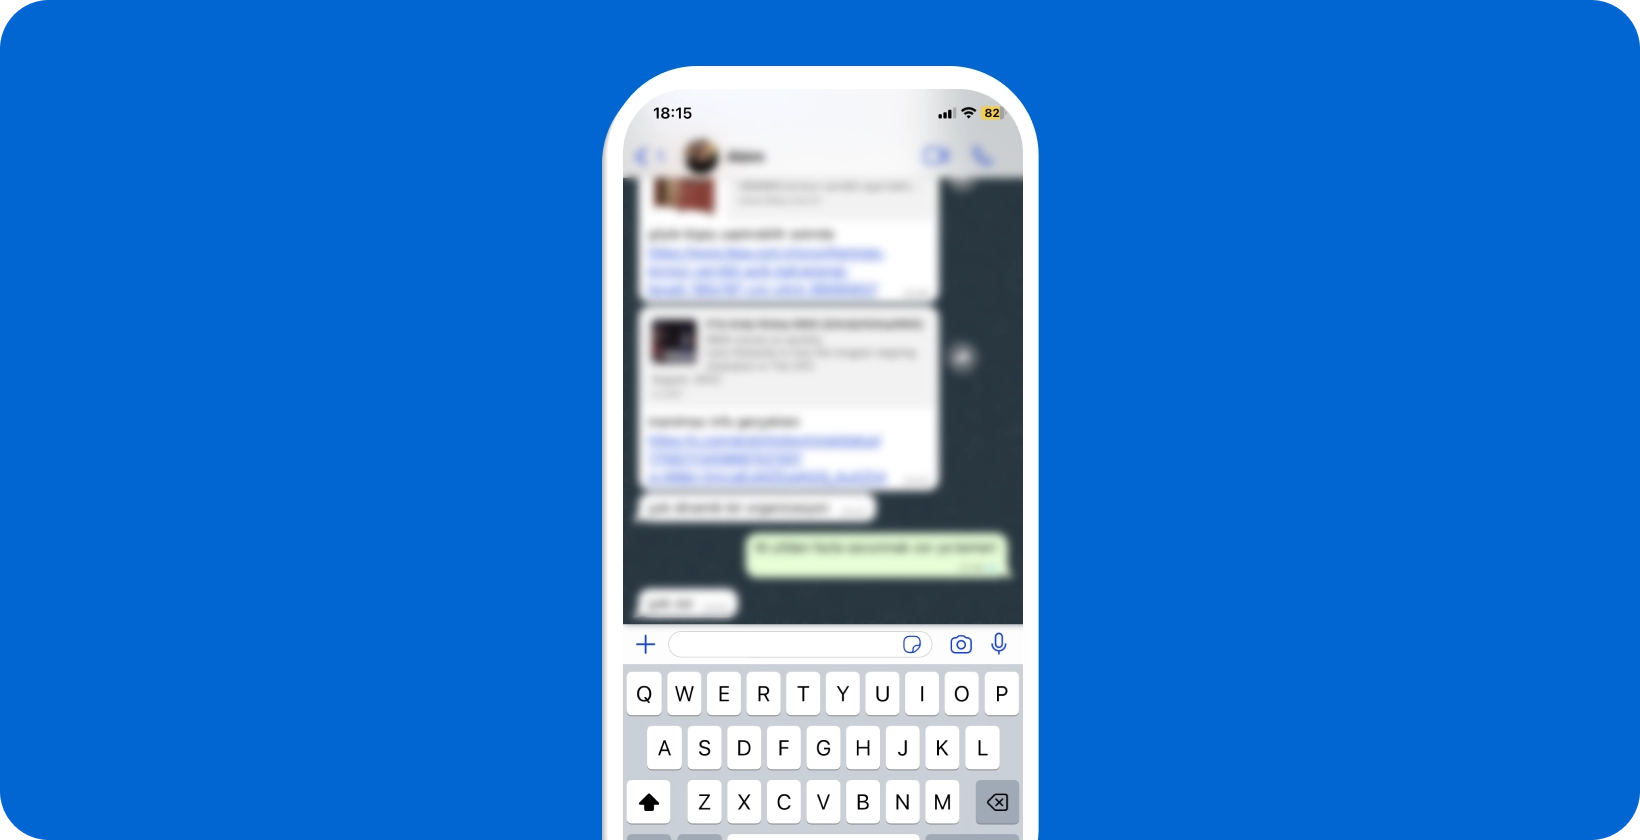 Išmanusis telefonas, rodantis aktyvų WhatsApp pokalbį atidarius klaviatūrą, paruoštas diktuoti balsu.